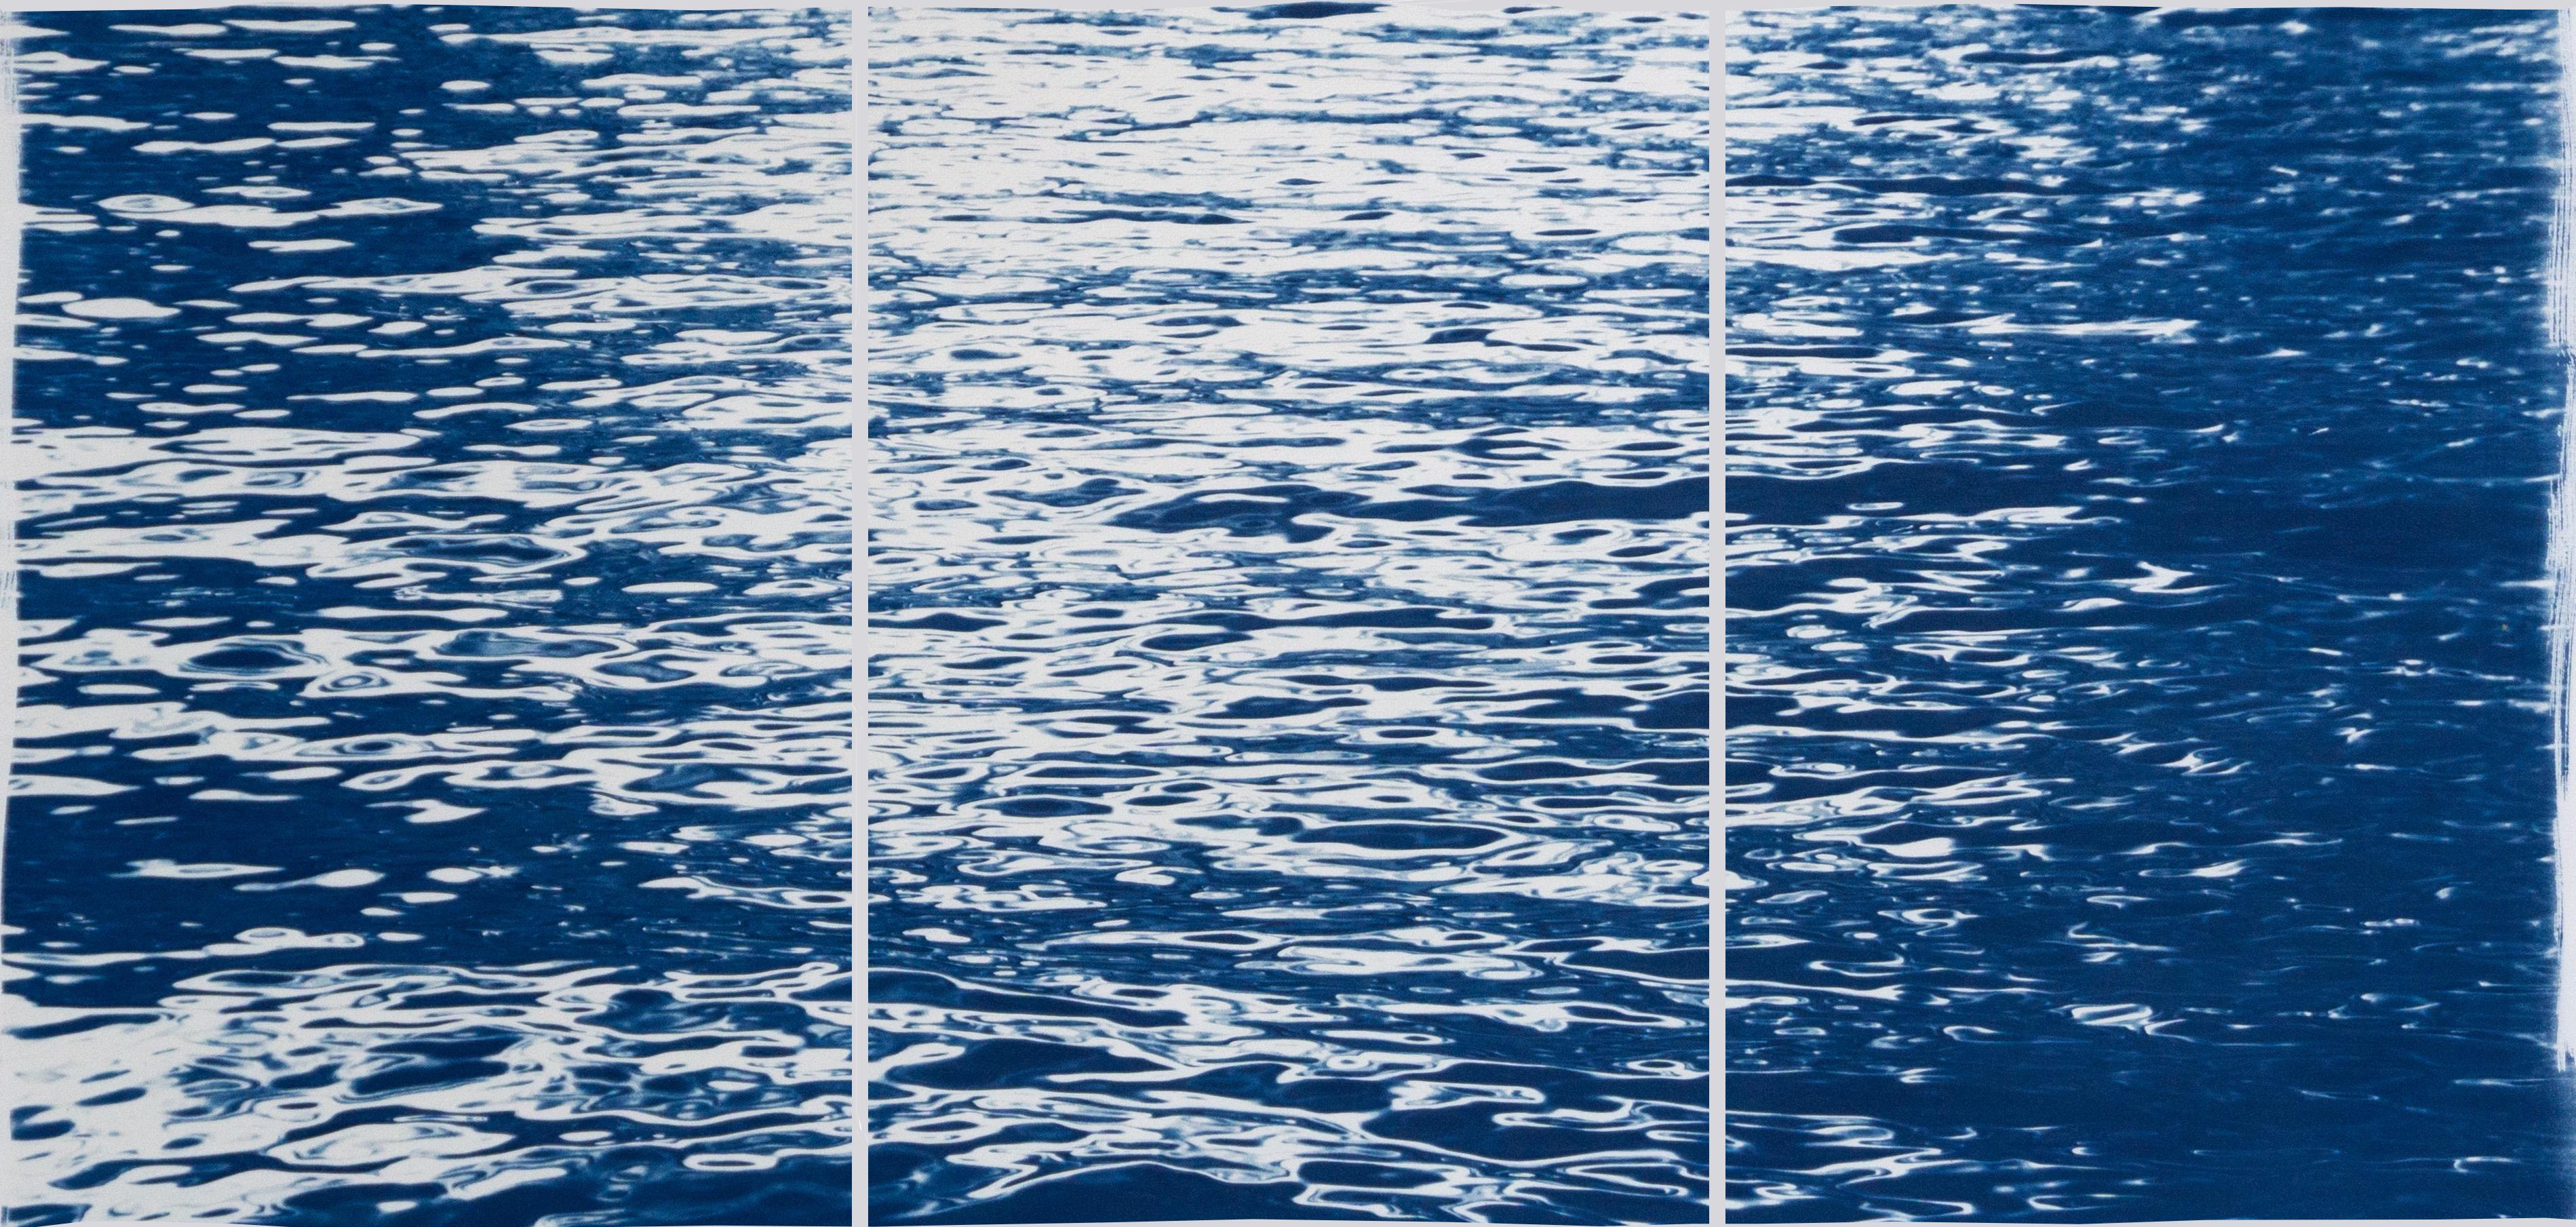 Mondlicht Riffeln über Como, nautisches Dreifachtychon mit bewegtem Wasser